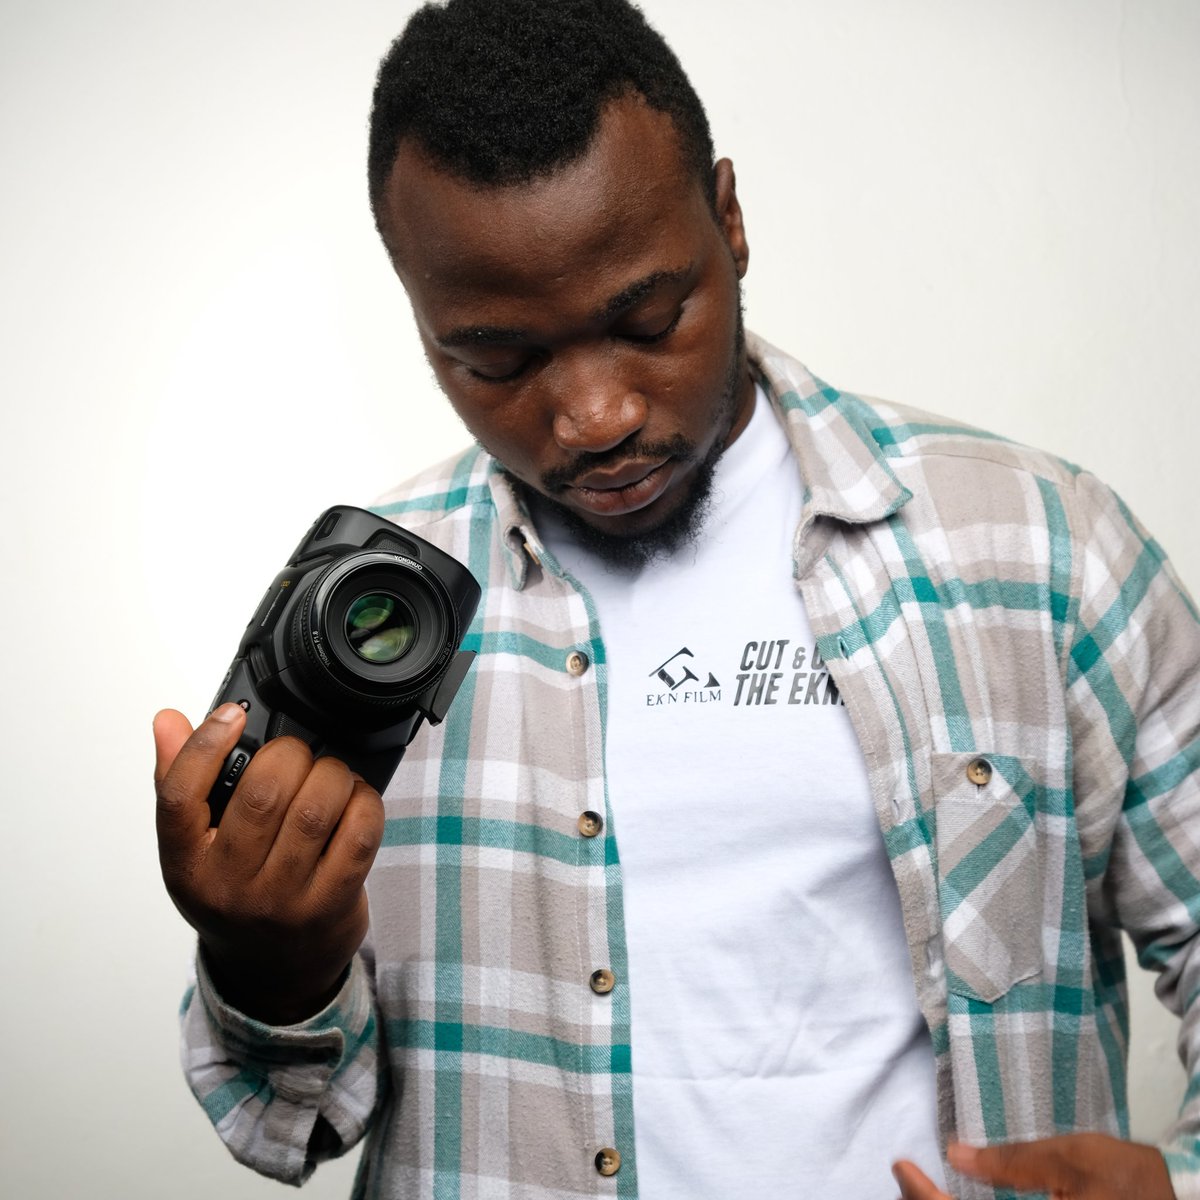 #NouvellePhotoDeProfil
Réalisateur Camerounais basé à Yaoundé 
Creativ director/ graphic designer/ vfx artist / 2d & 3d animator
Ceo @EknMusic EknFilm
Also Rappeur and singer 😌